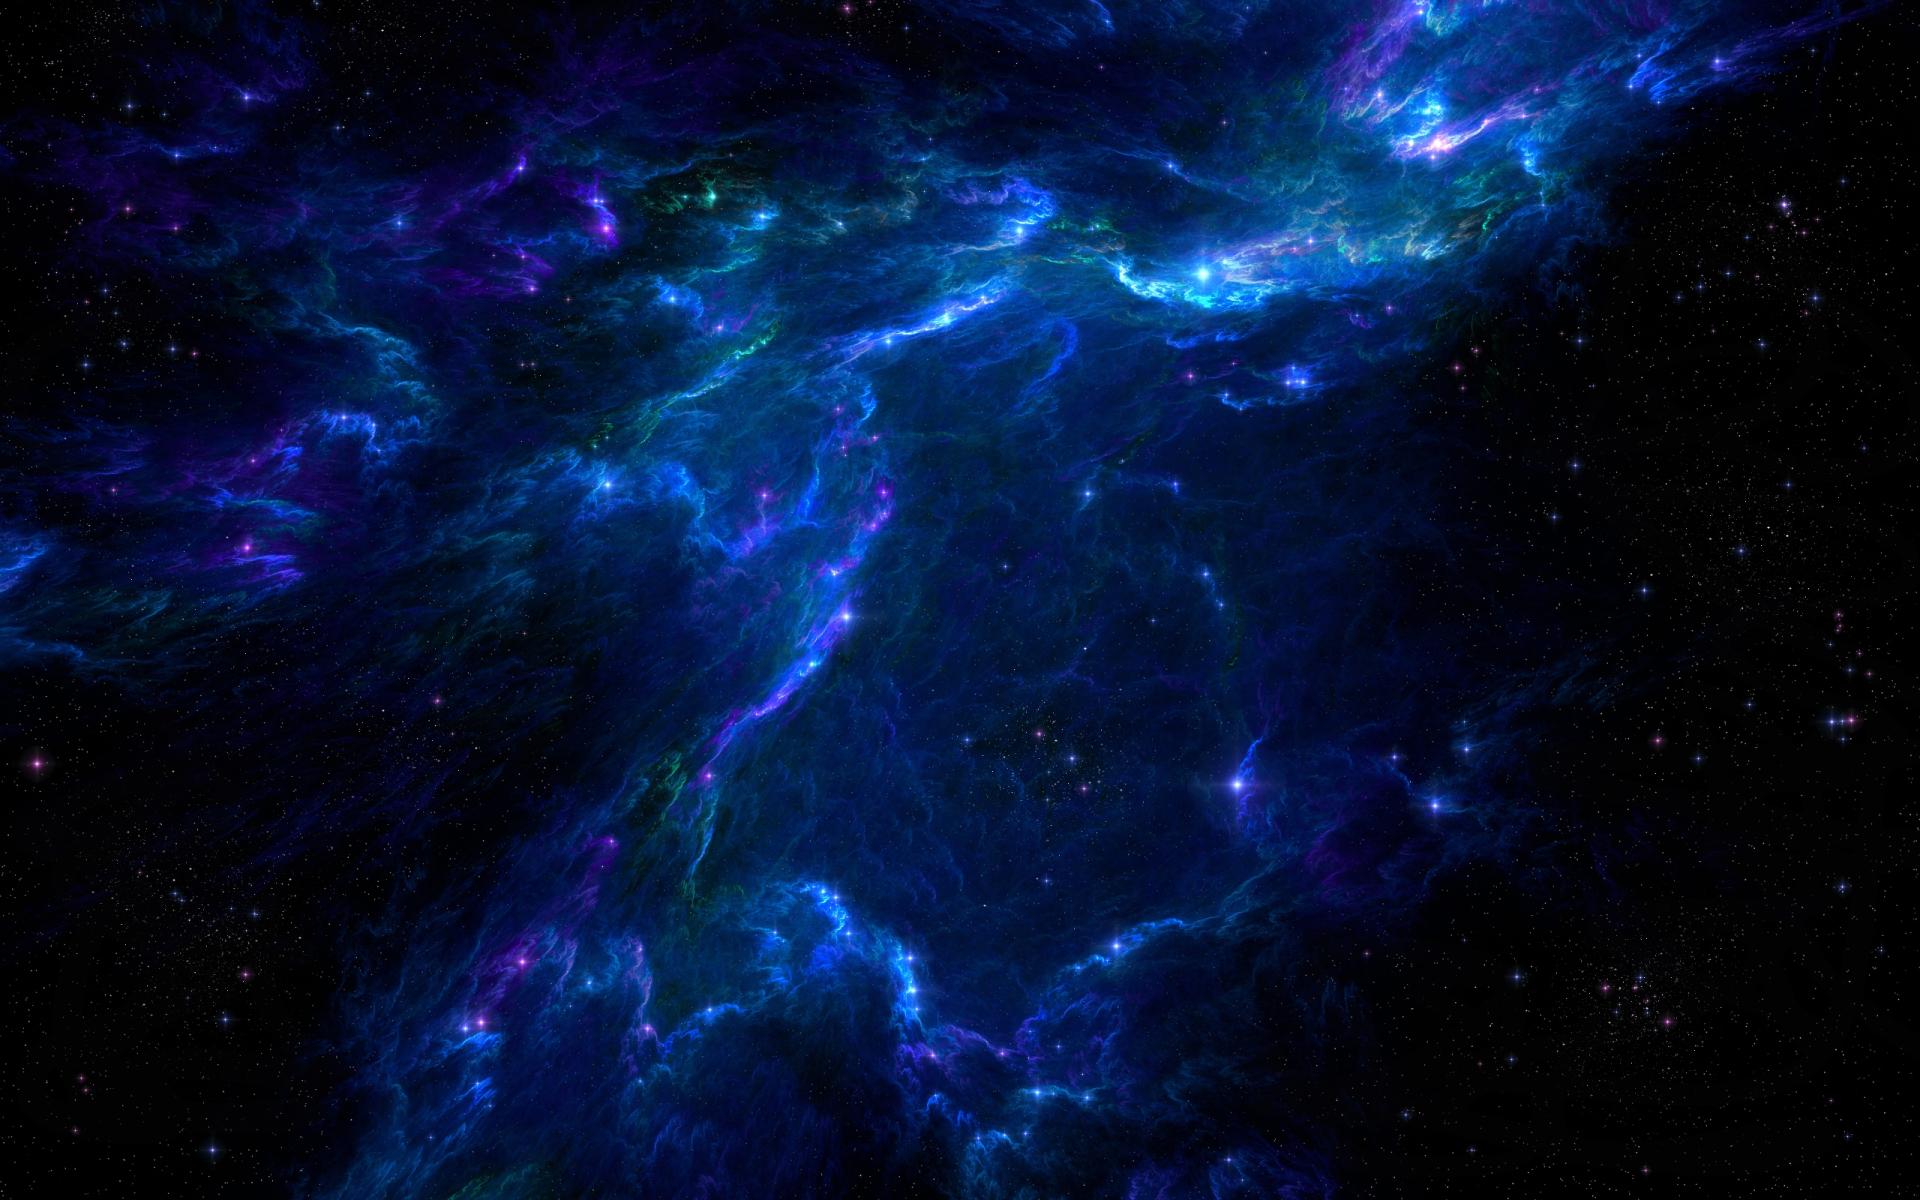 Nebula Sci Fi at 1280 x 960 size wallpapers HD quality